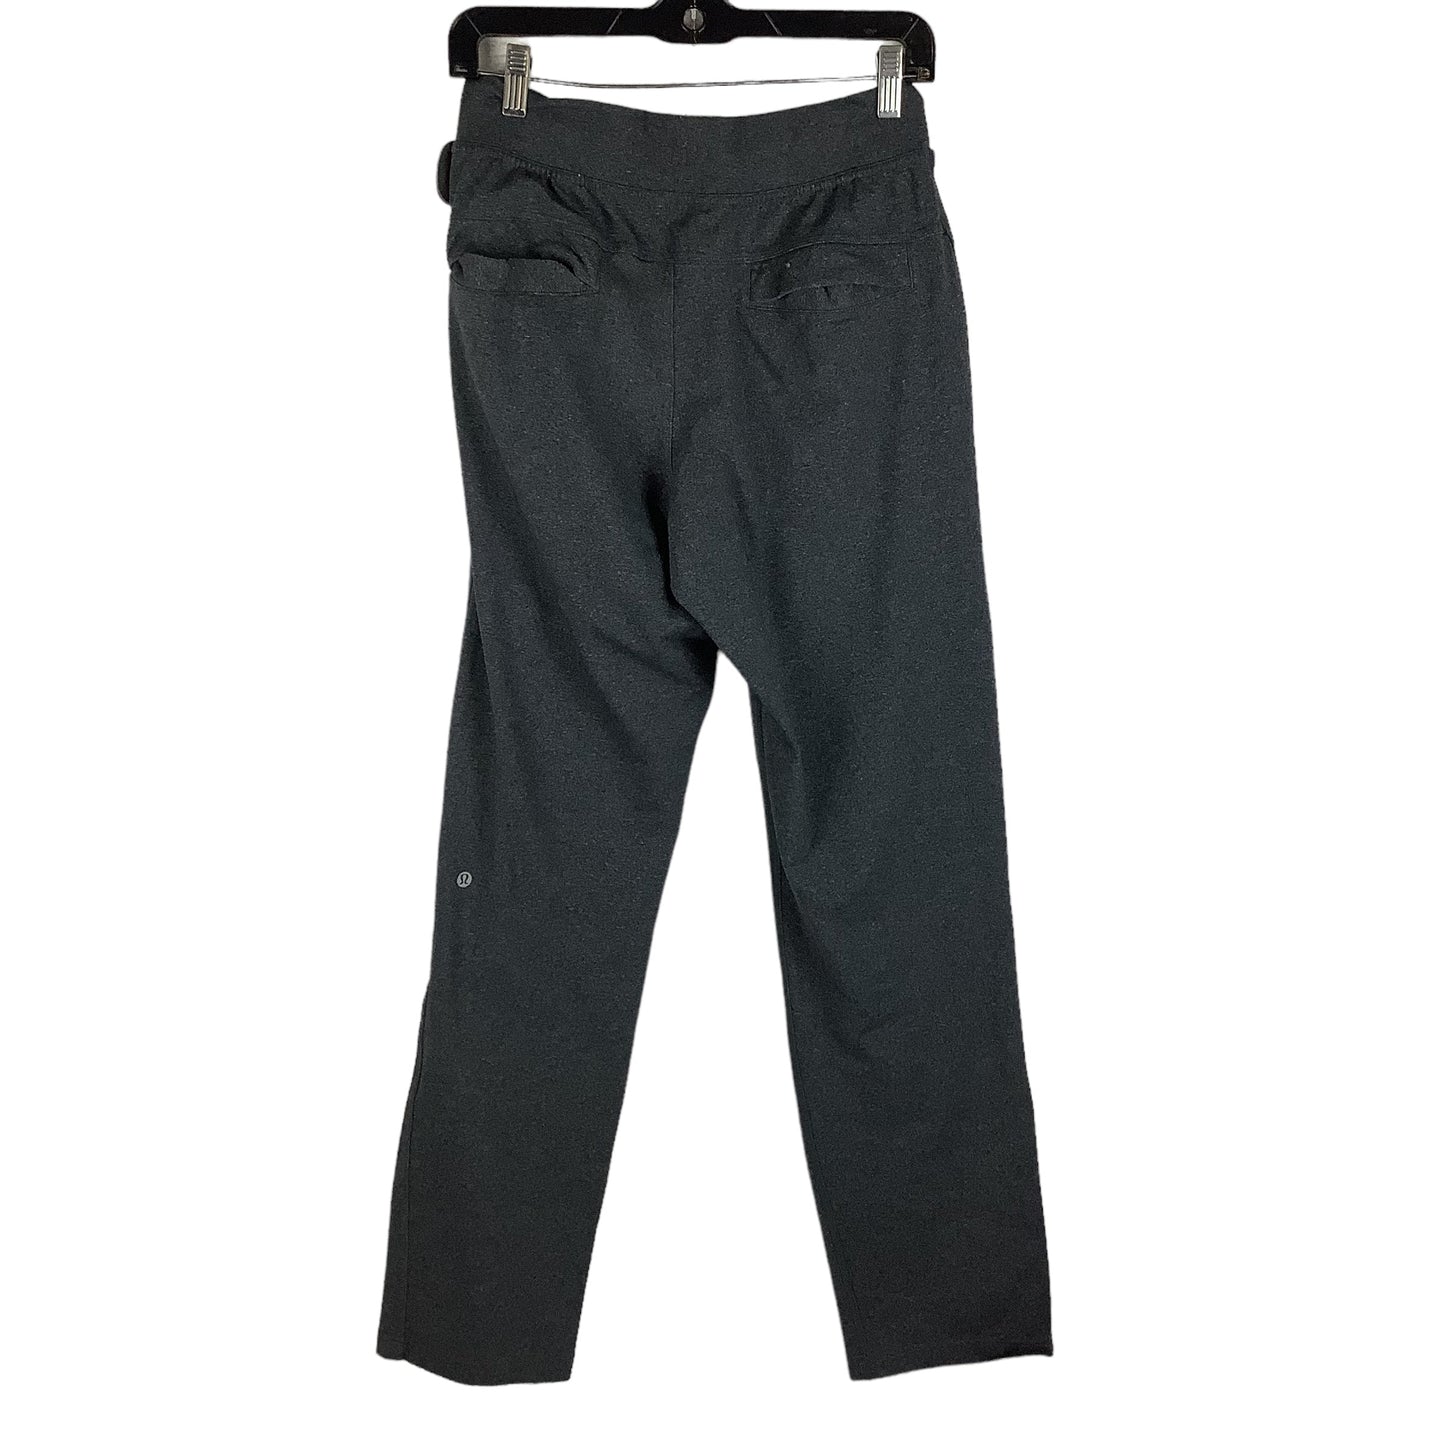 Grey Athletic Pants Lululemon, Size S